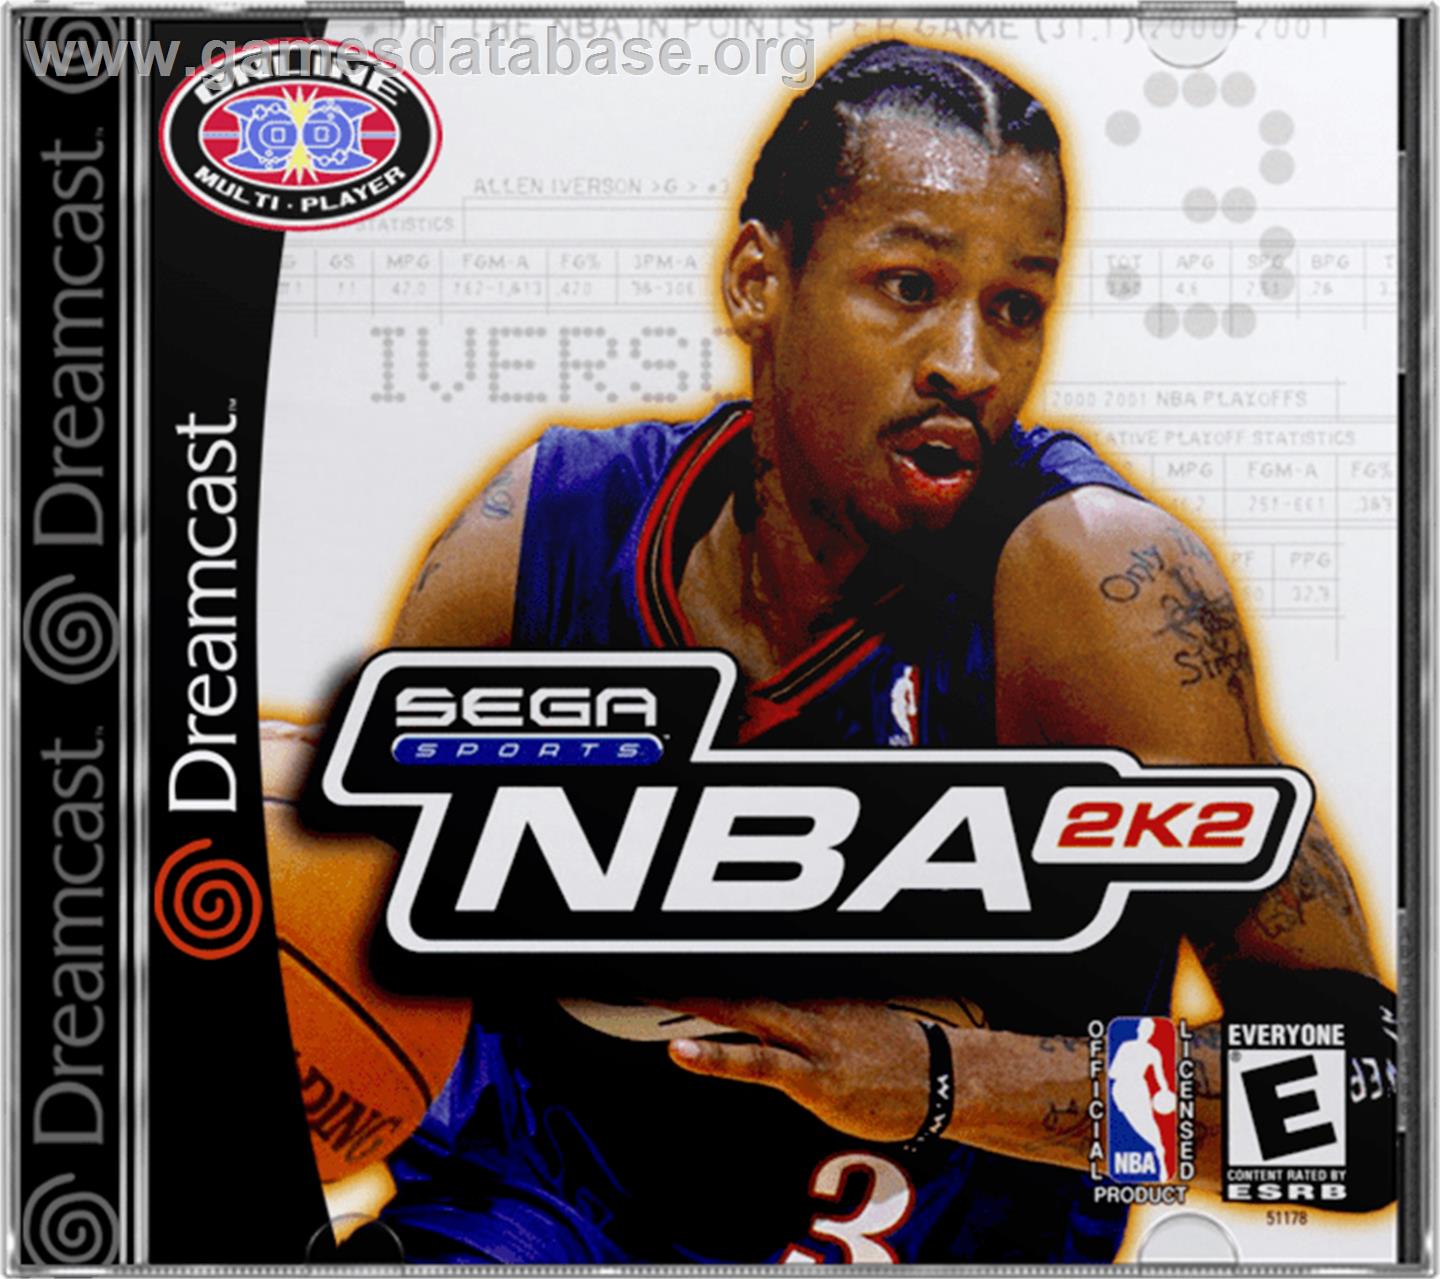 NBA 2K2 - Sega Dreamcast - Artwork - Box